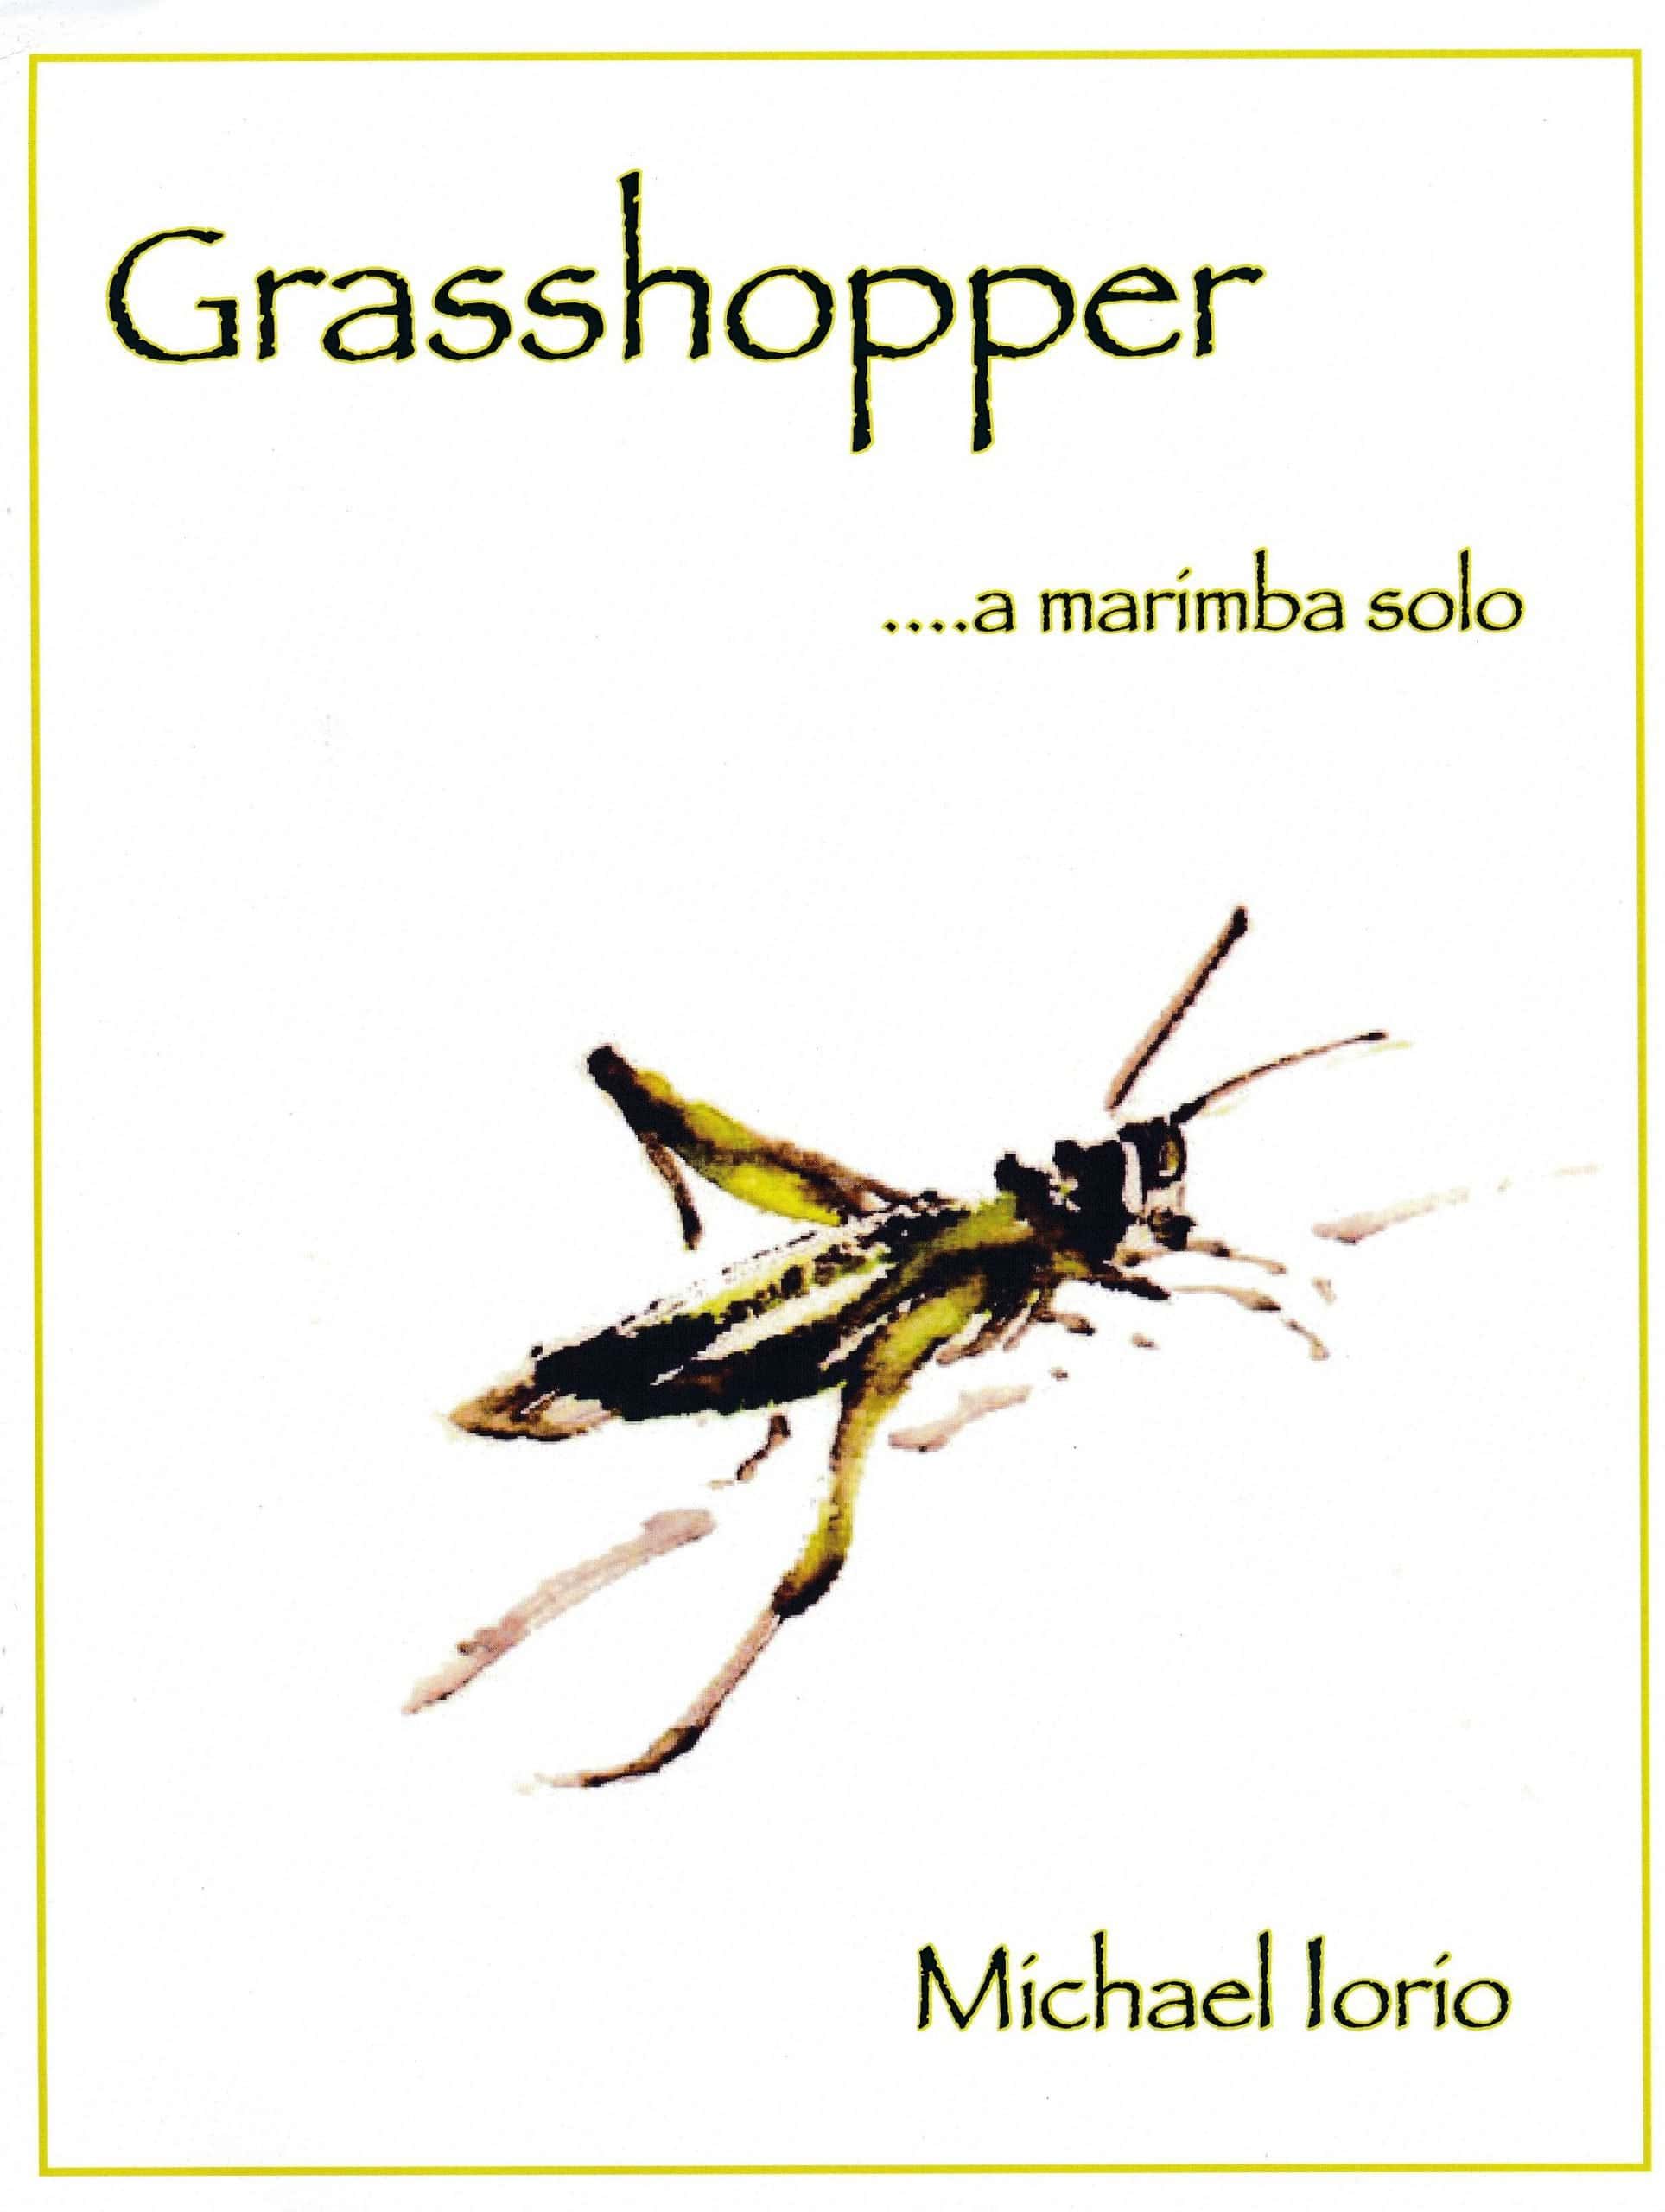 Grasshopper by Michael Iorio